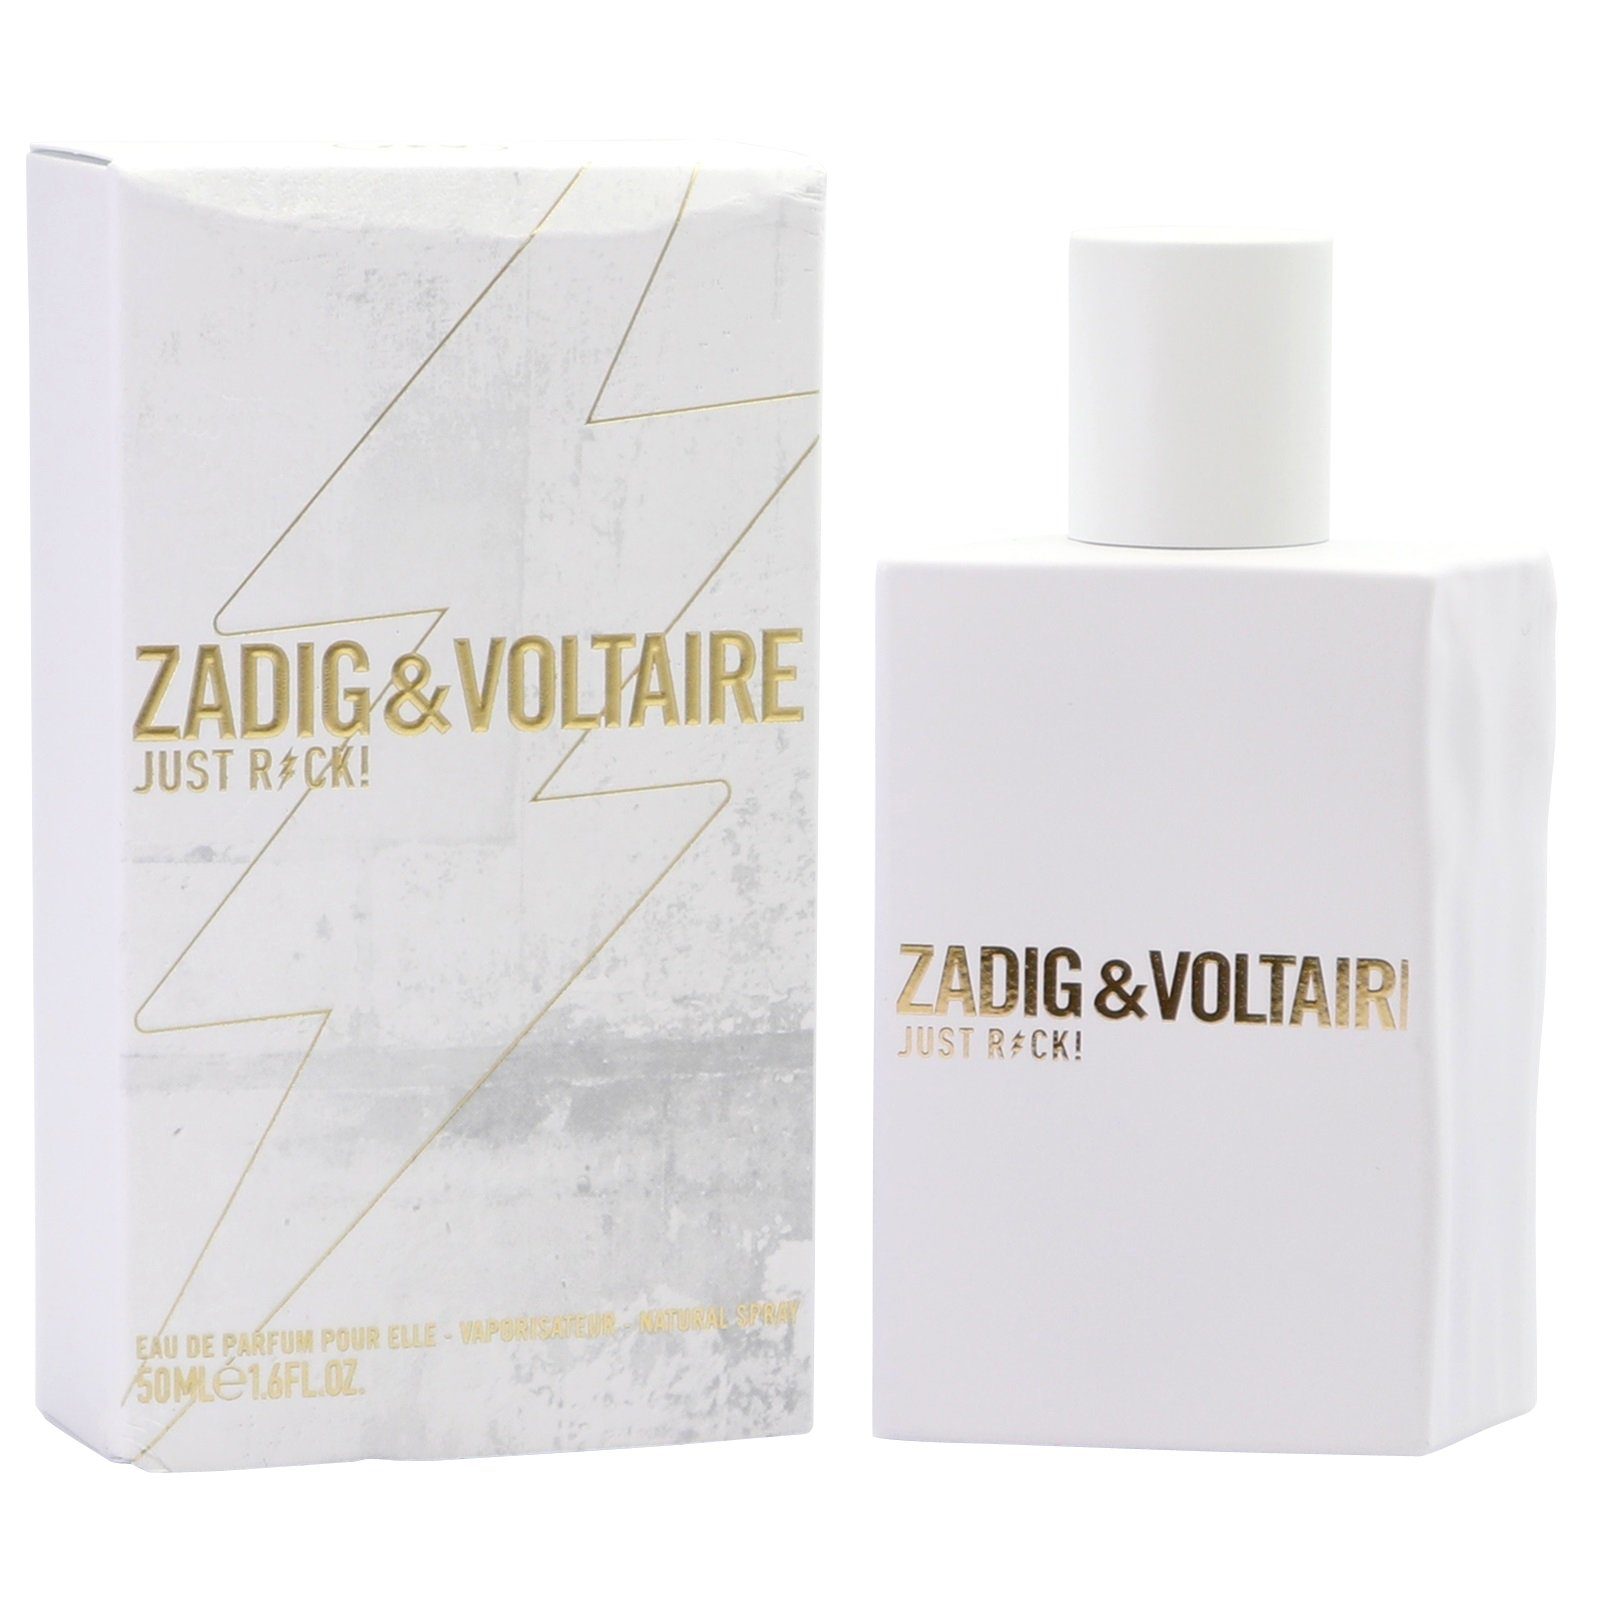 ZADIG & VOLTAIRE Eau Eau for Rock! de Voltaire her Parfum Just Spray 50ml Zadig & de Parfum Elle Pour